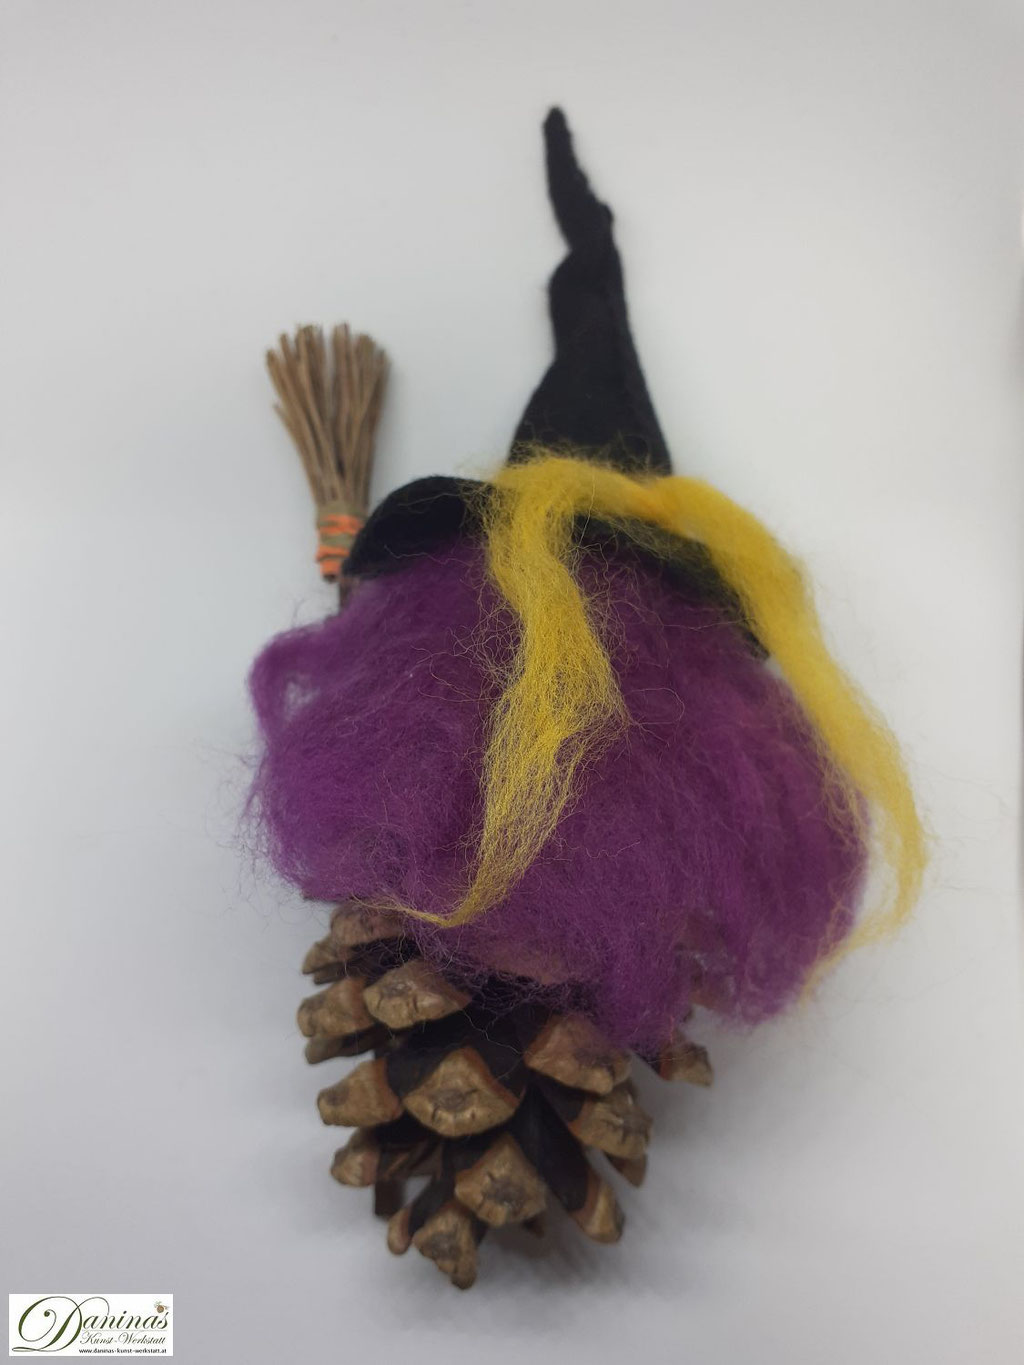 Hexe Gelbstein Rückseite. Handgefertigte Hexenfigur aus Kiefernzapfen, mit violetten langen Haaren aus Wolle und schwarzem Hexenhut, Hexenbesen aus Kiefernnadeln